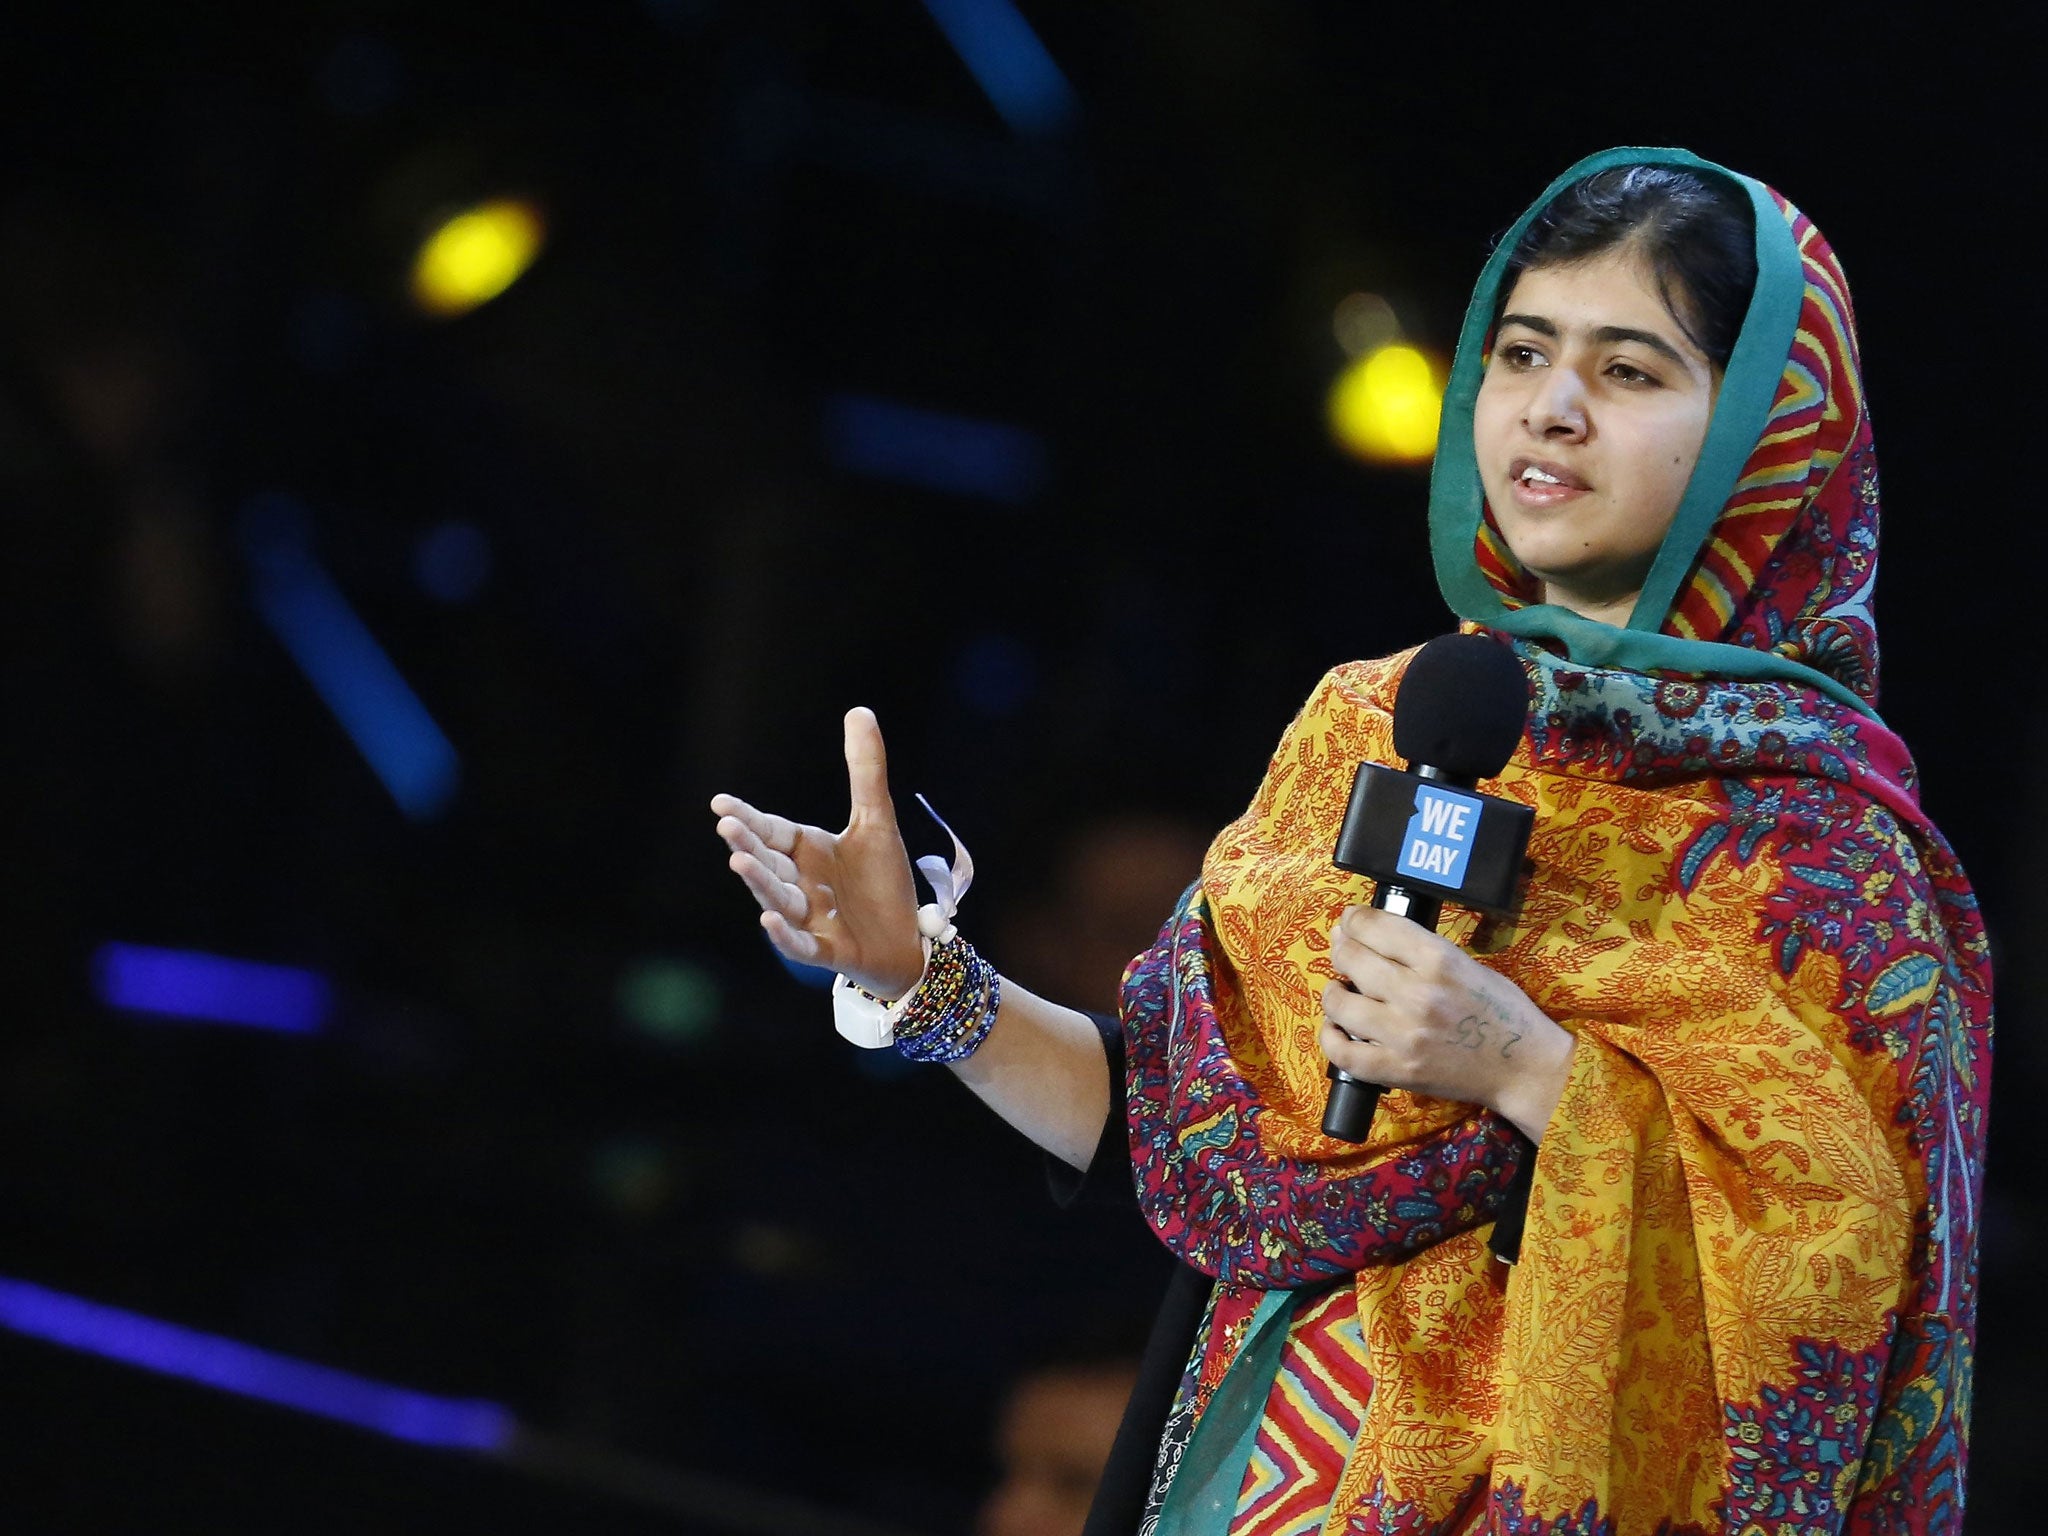 Malala Yousafzai speaks at the inaugural 'We Day' at Wembley Arena on Friday